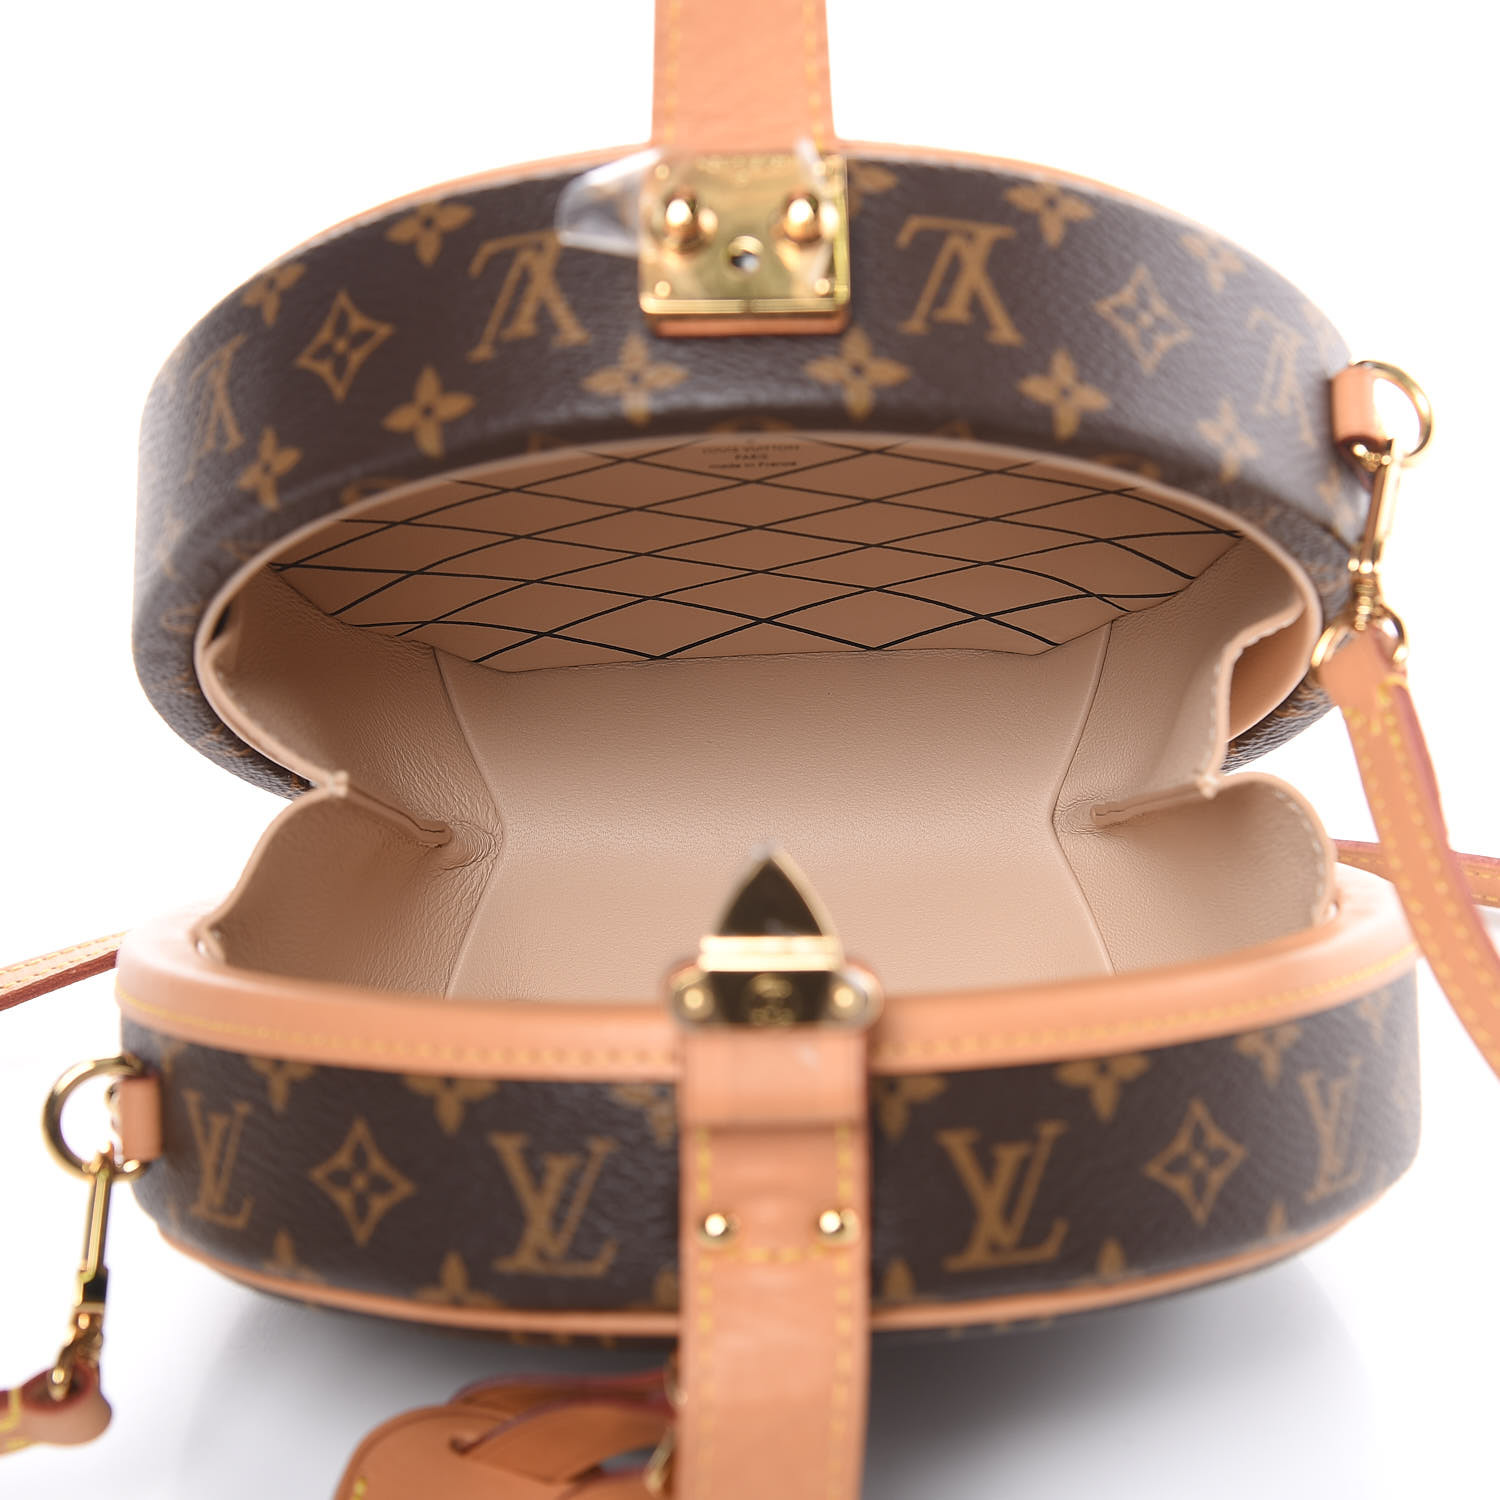 fashionphile on Instagram: The Louis Vuitton Boite Chapeau Souple